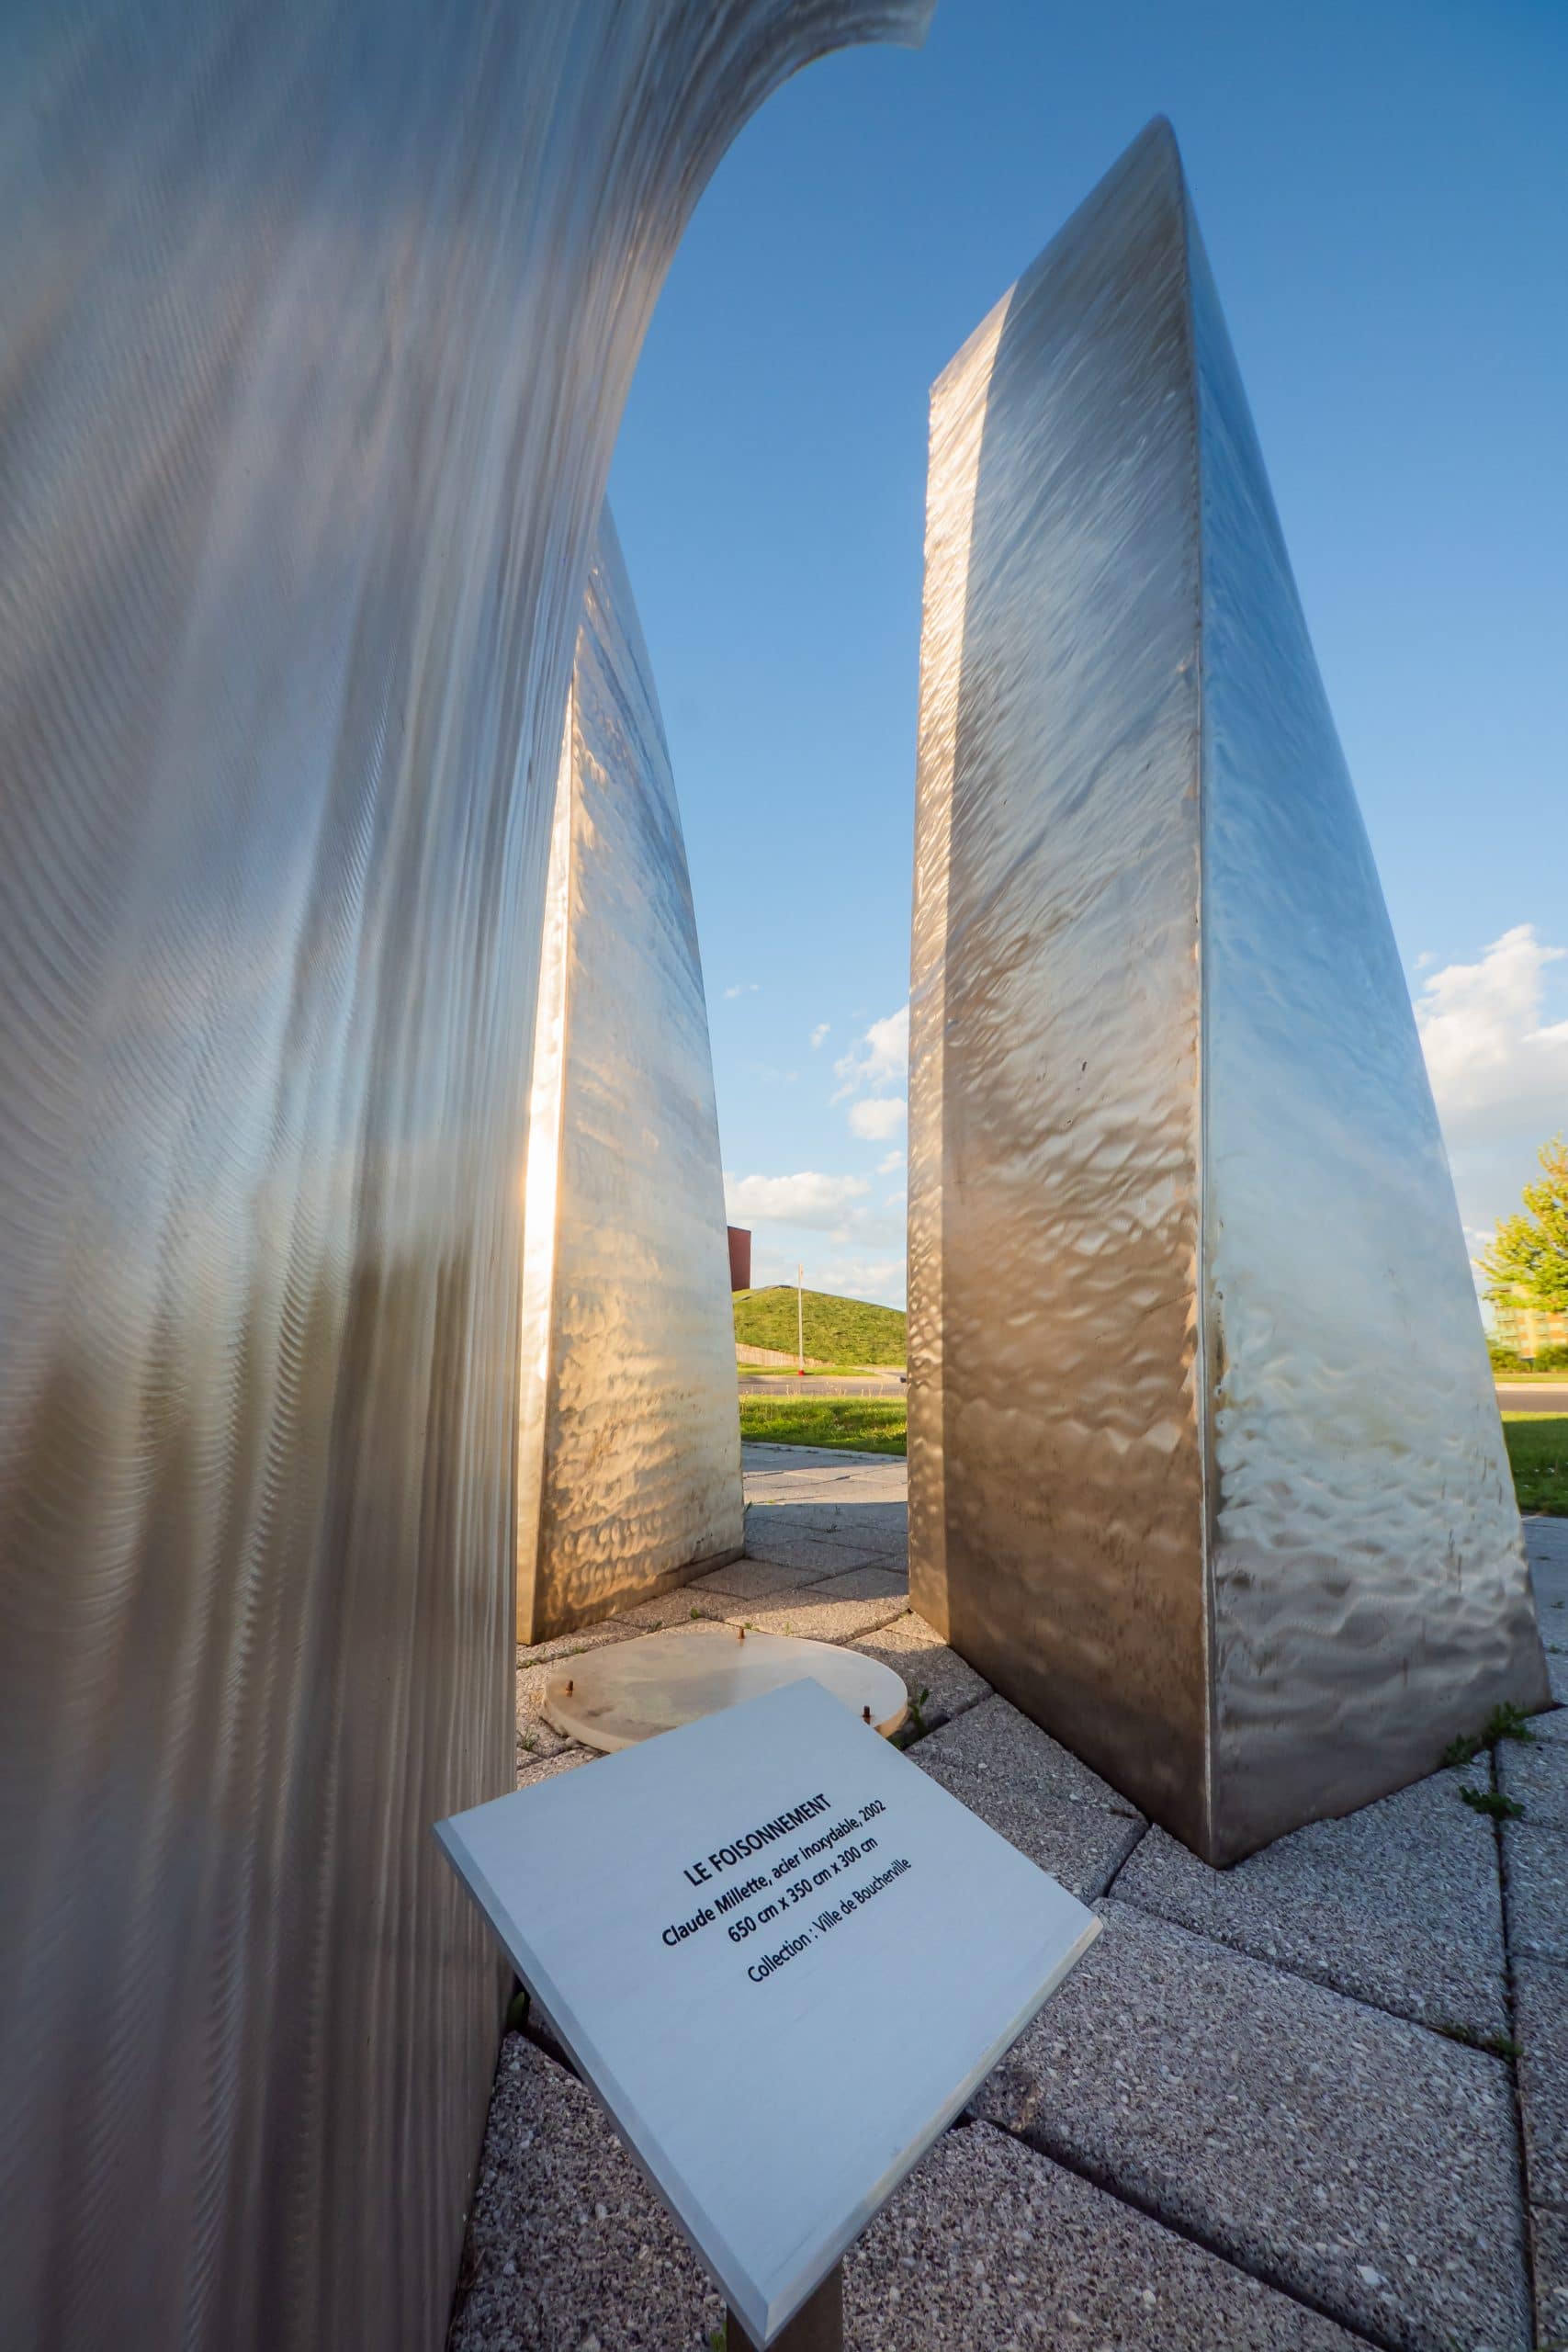 Catalogue d'art public - Claude Millette : Le Foisonnement - Sculpture de trois grandes colonnes métalliques courbées évoquant des éléments organiques en mouvement.